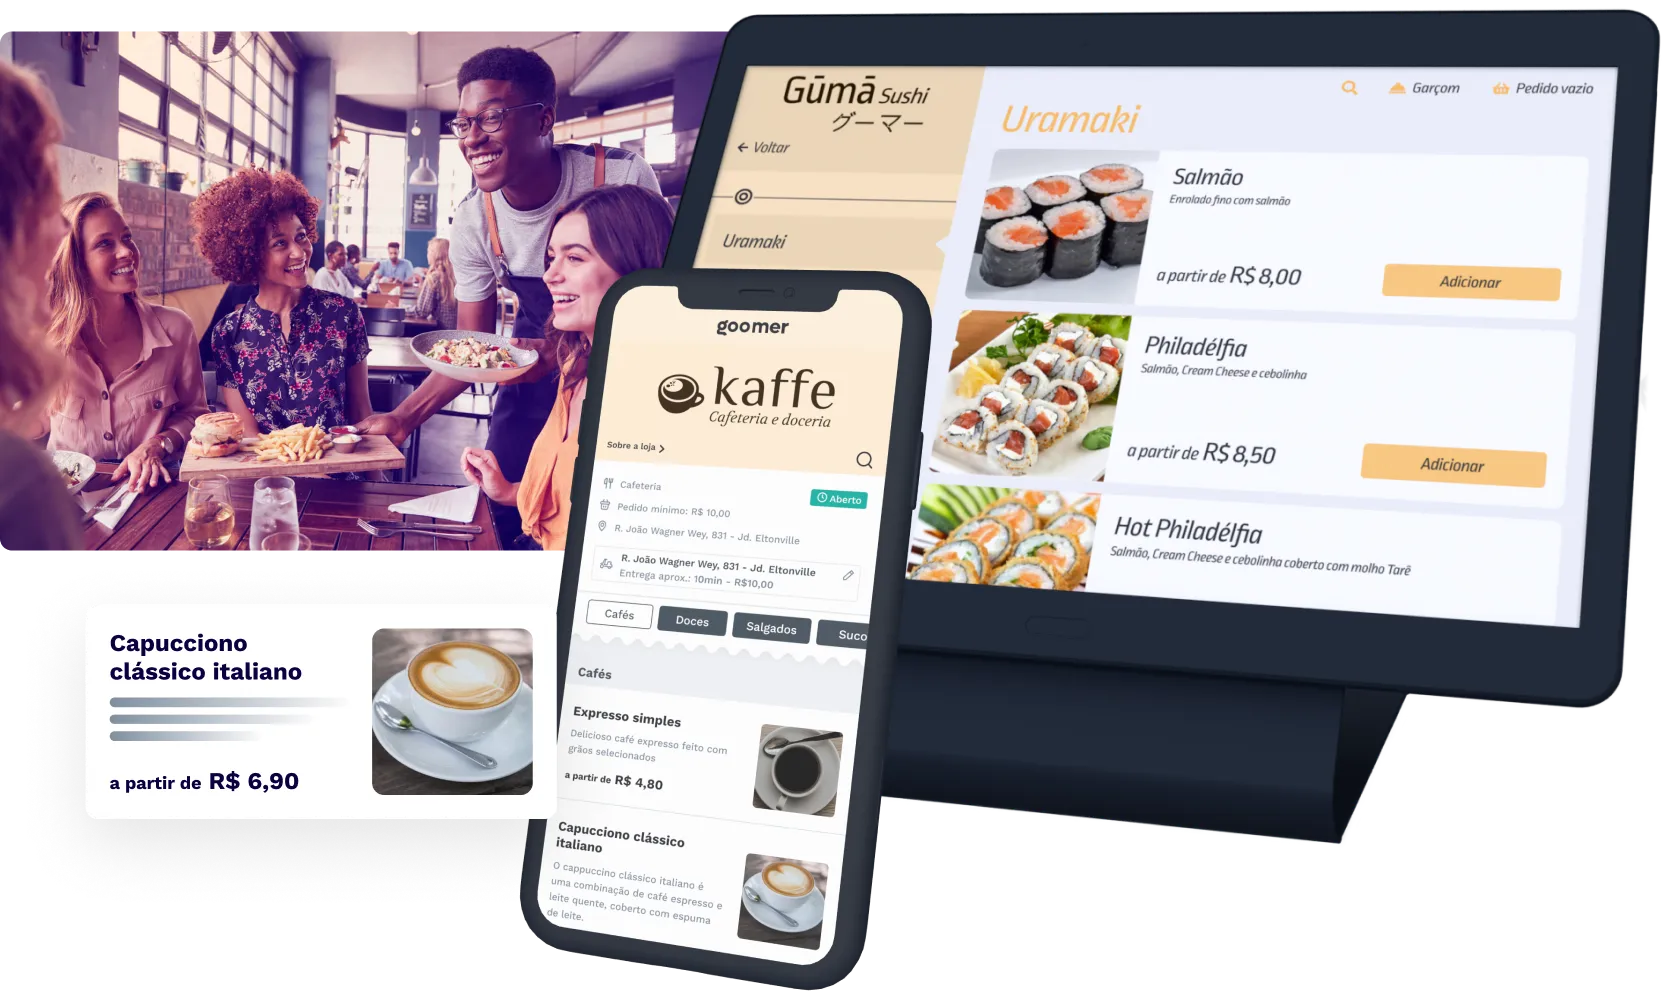 Imagem de pessoas felizes em um restaurante, um tablet a direita com um cardápio digital na tela e um celular com cardápio digital na tela a frente do tablet